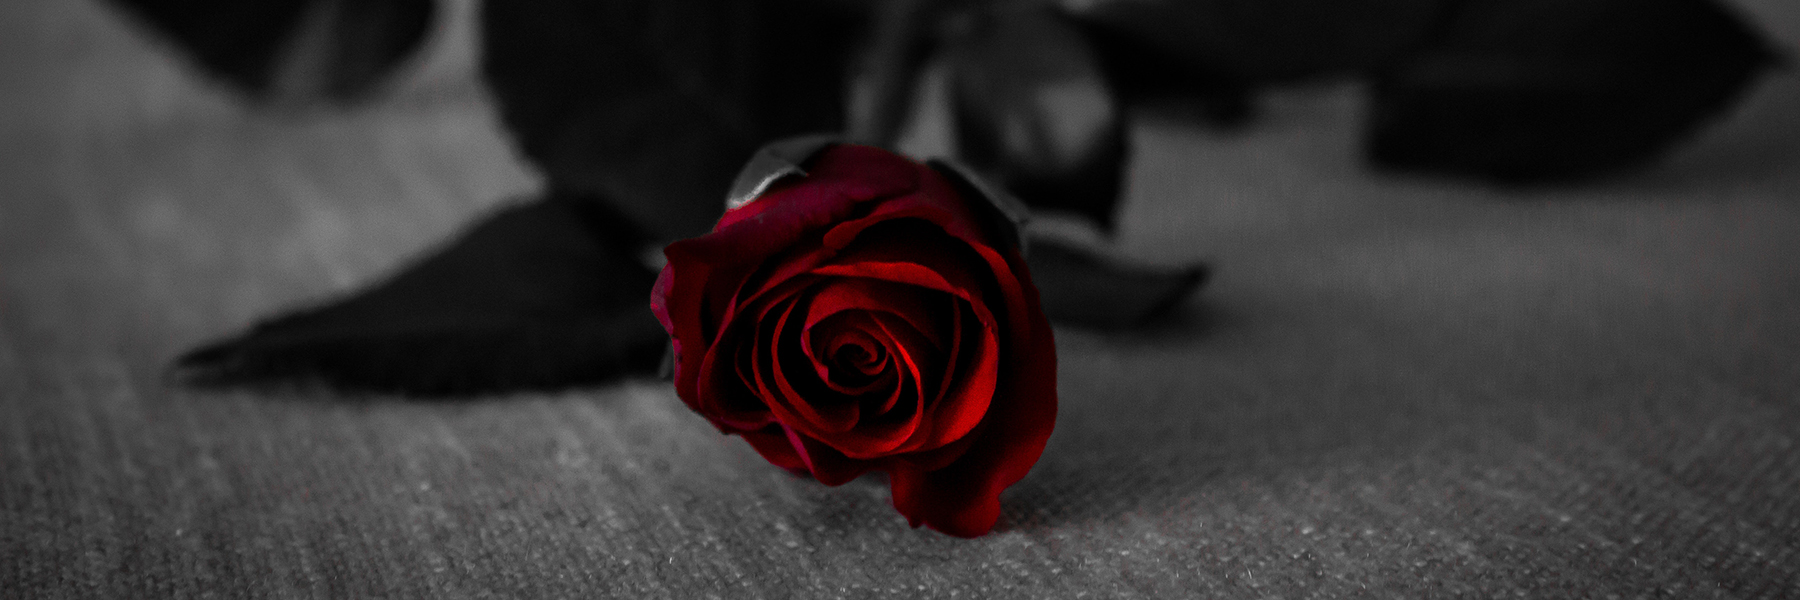 somber red rose